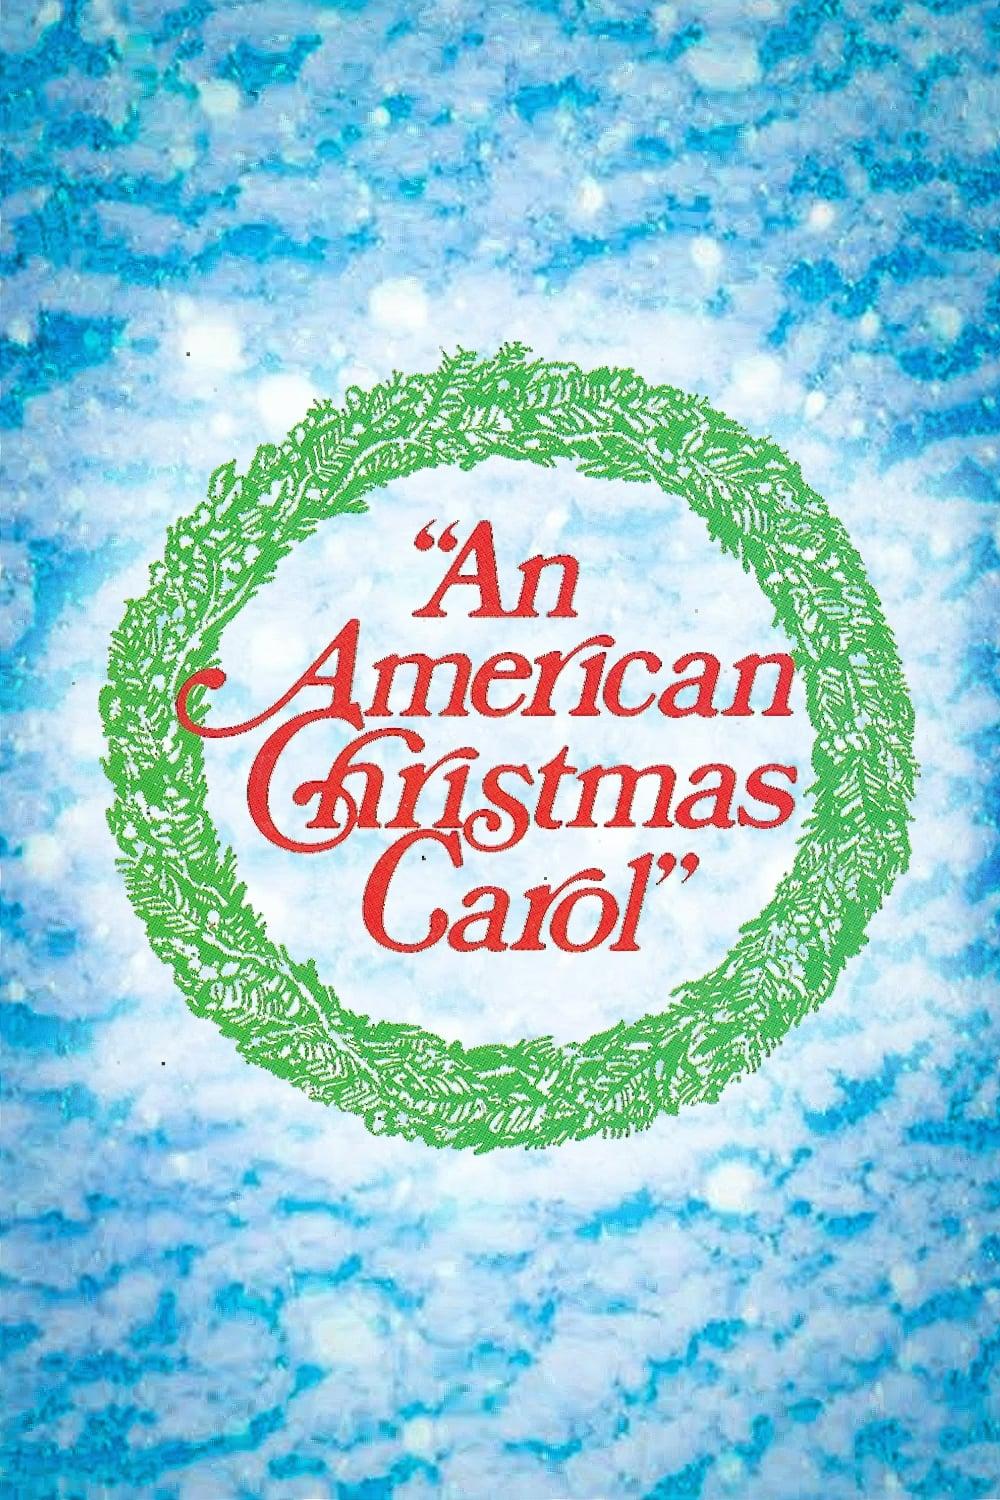 An American Christmas Carol poster